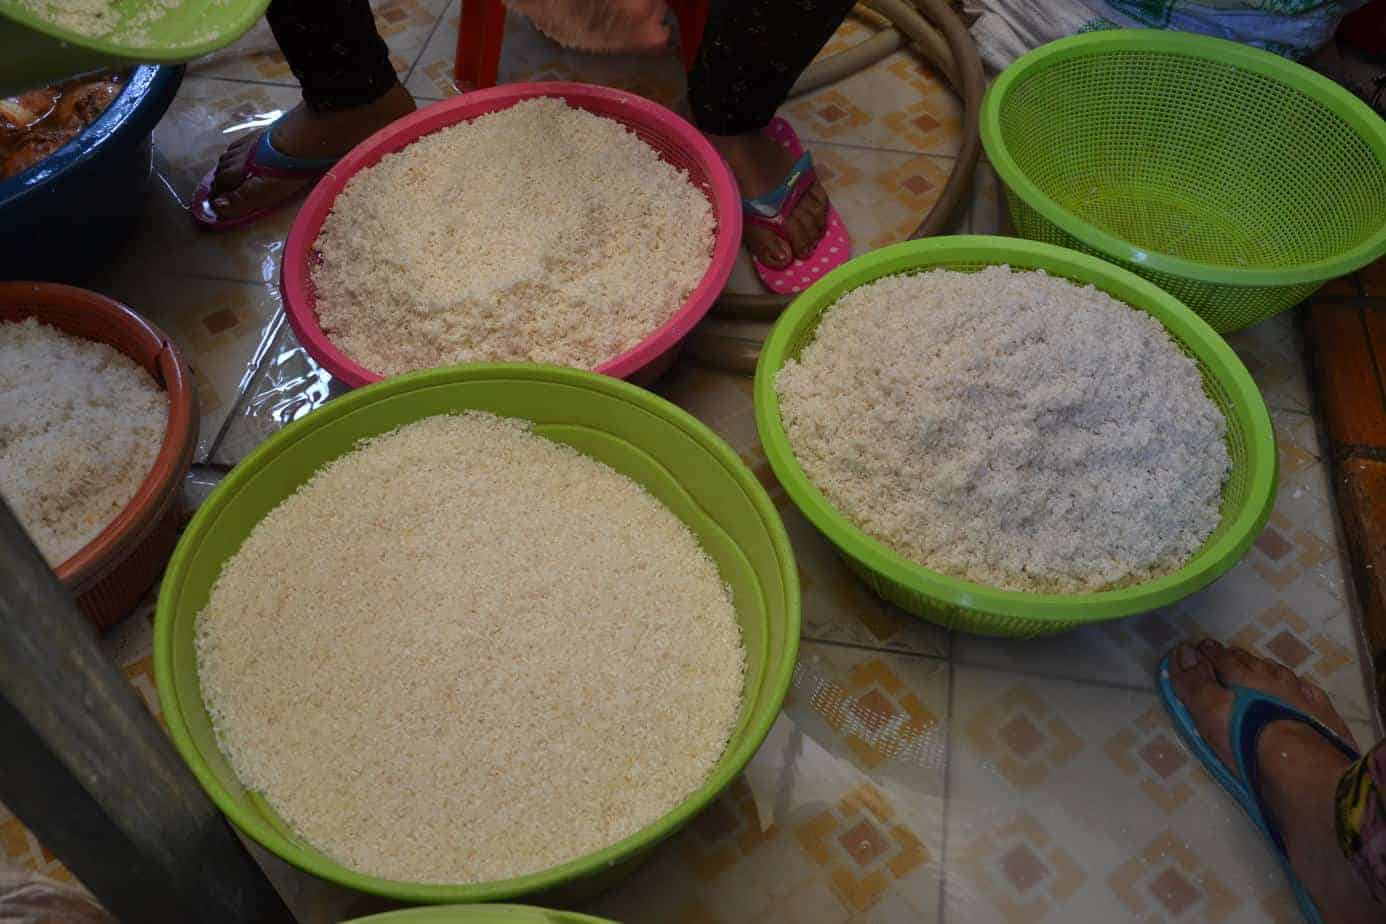 φρέσκο ρύζι στην καμπότζη - #εθελοντισμόςκαμπότζη #εθελοντισμόςασία maninio.com 